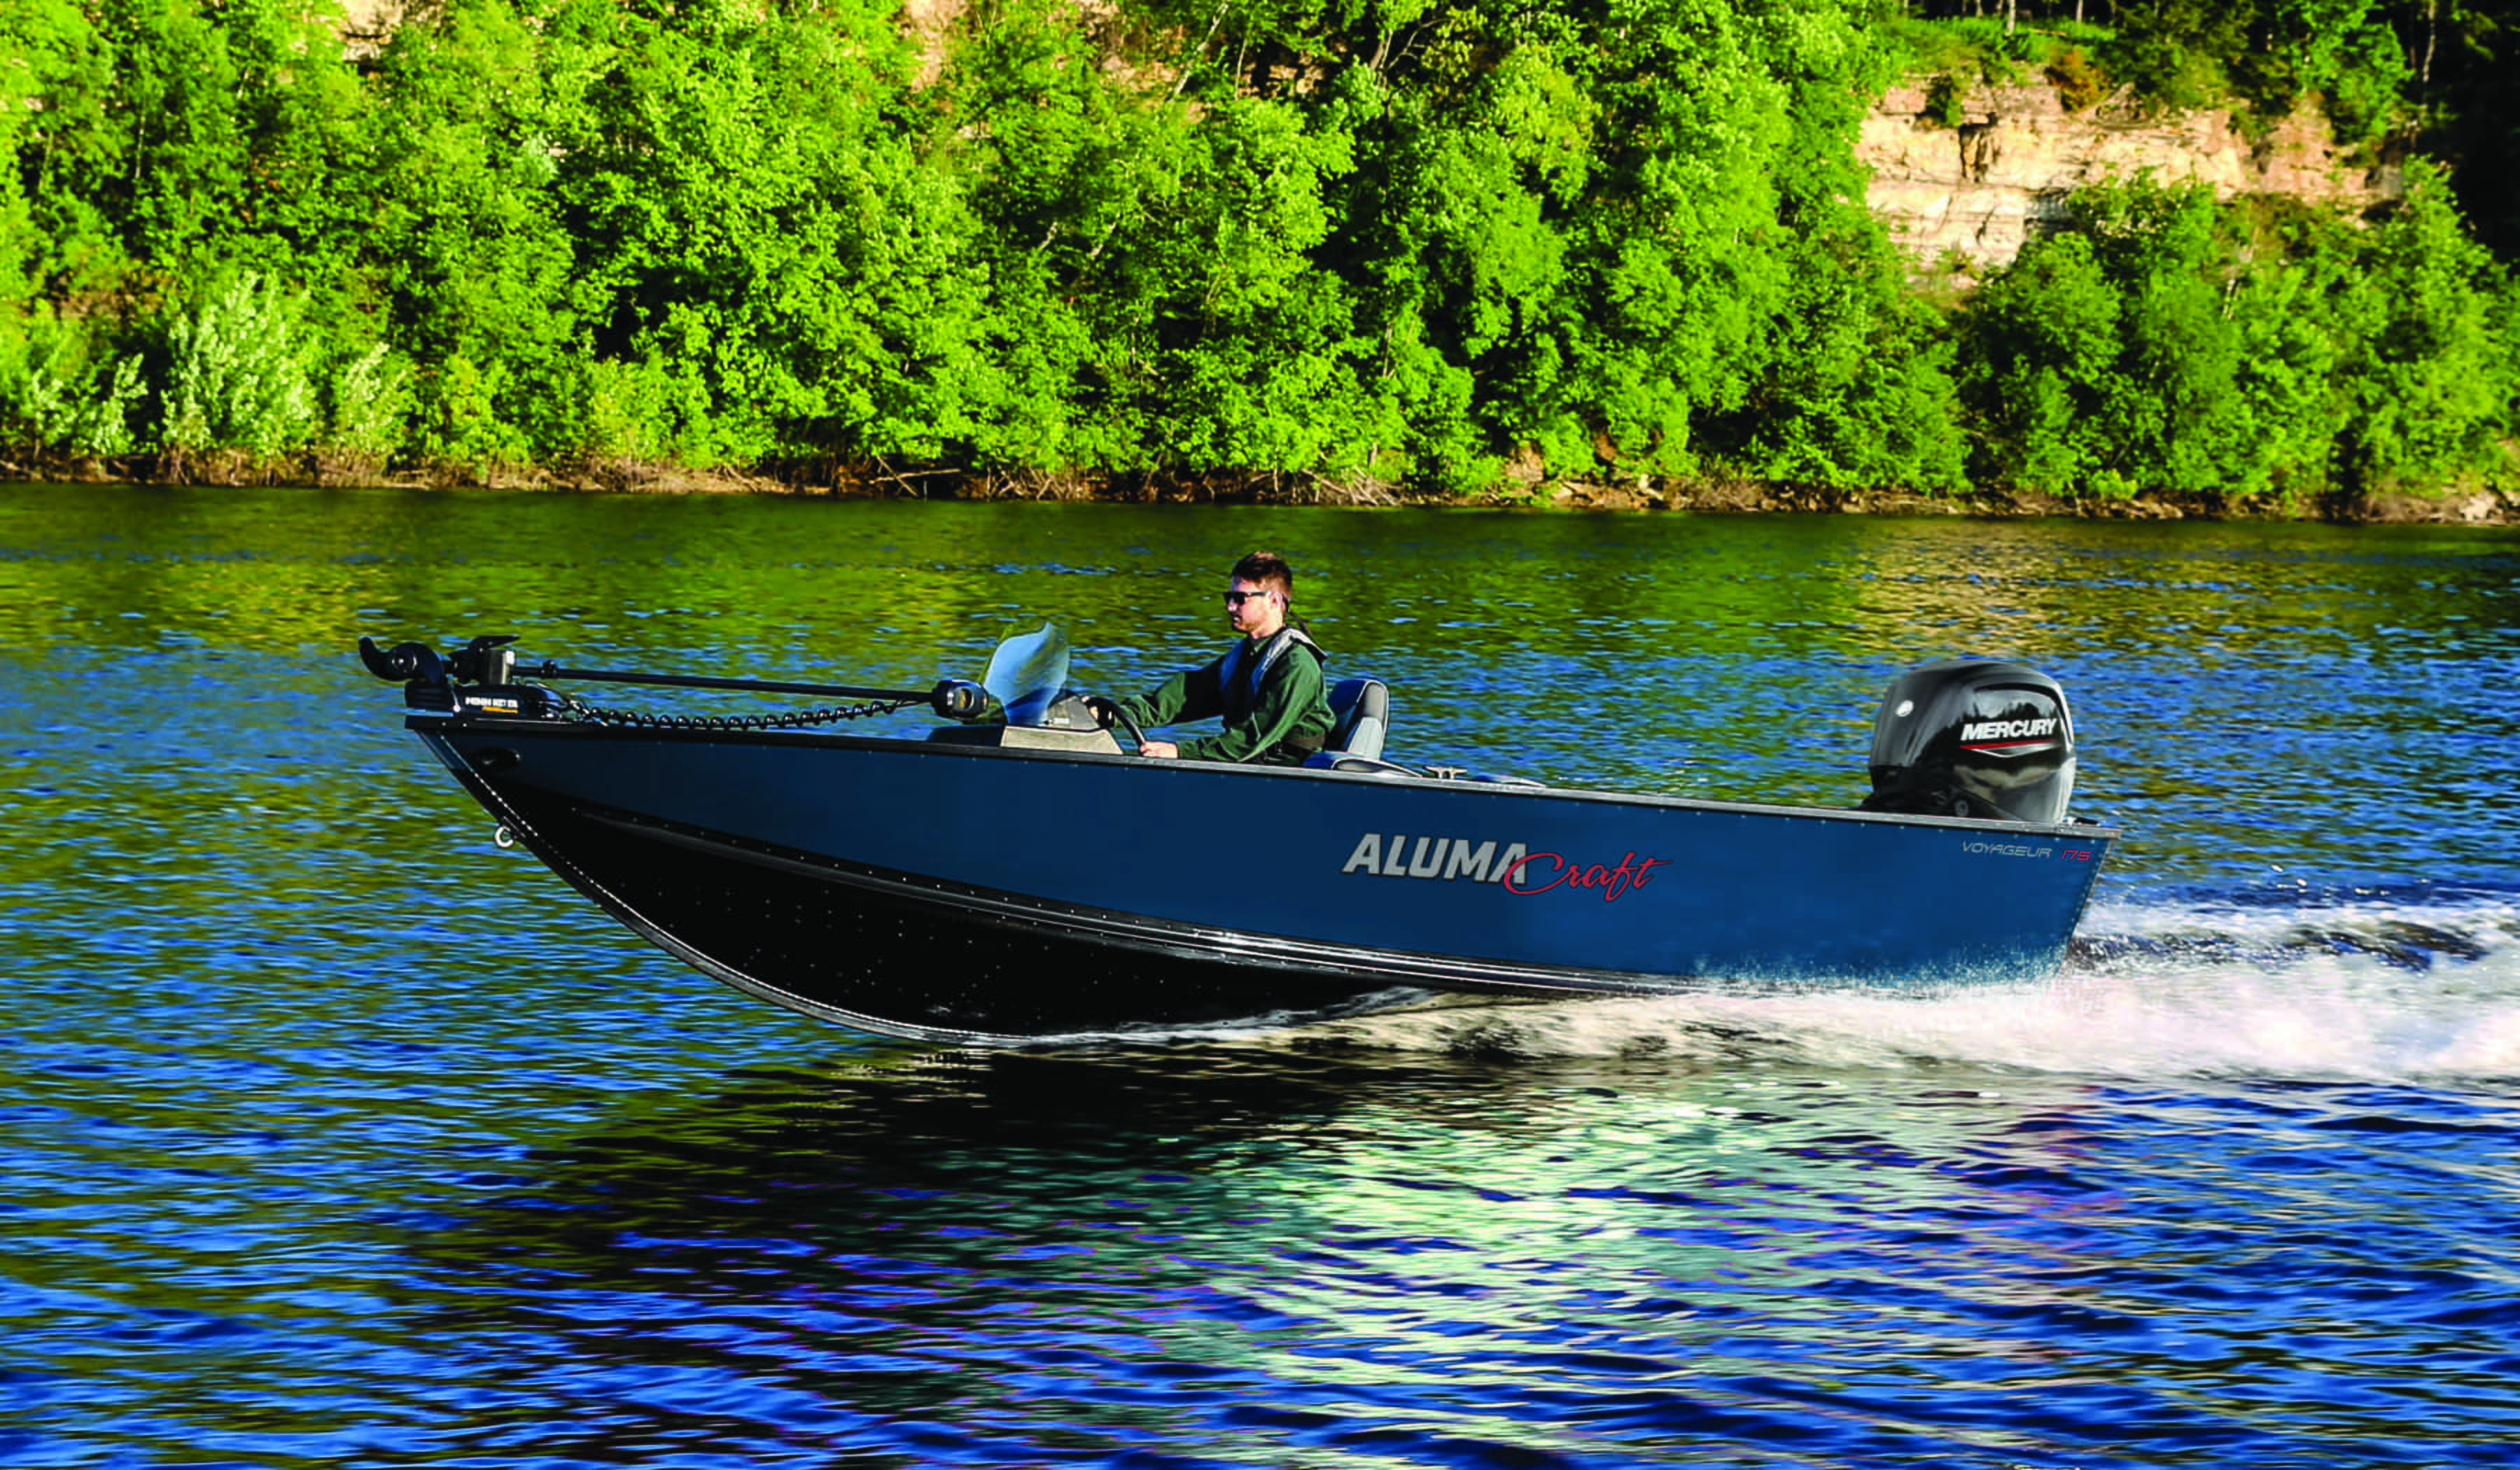 Men driving a blue Aluminum boat